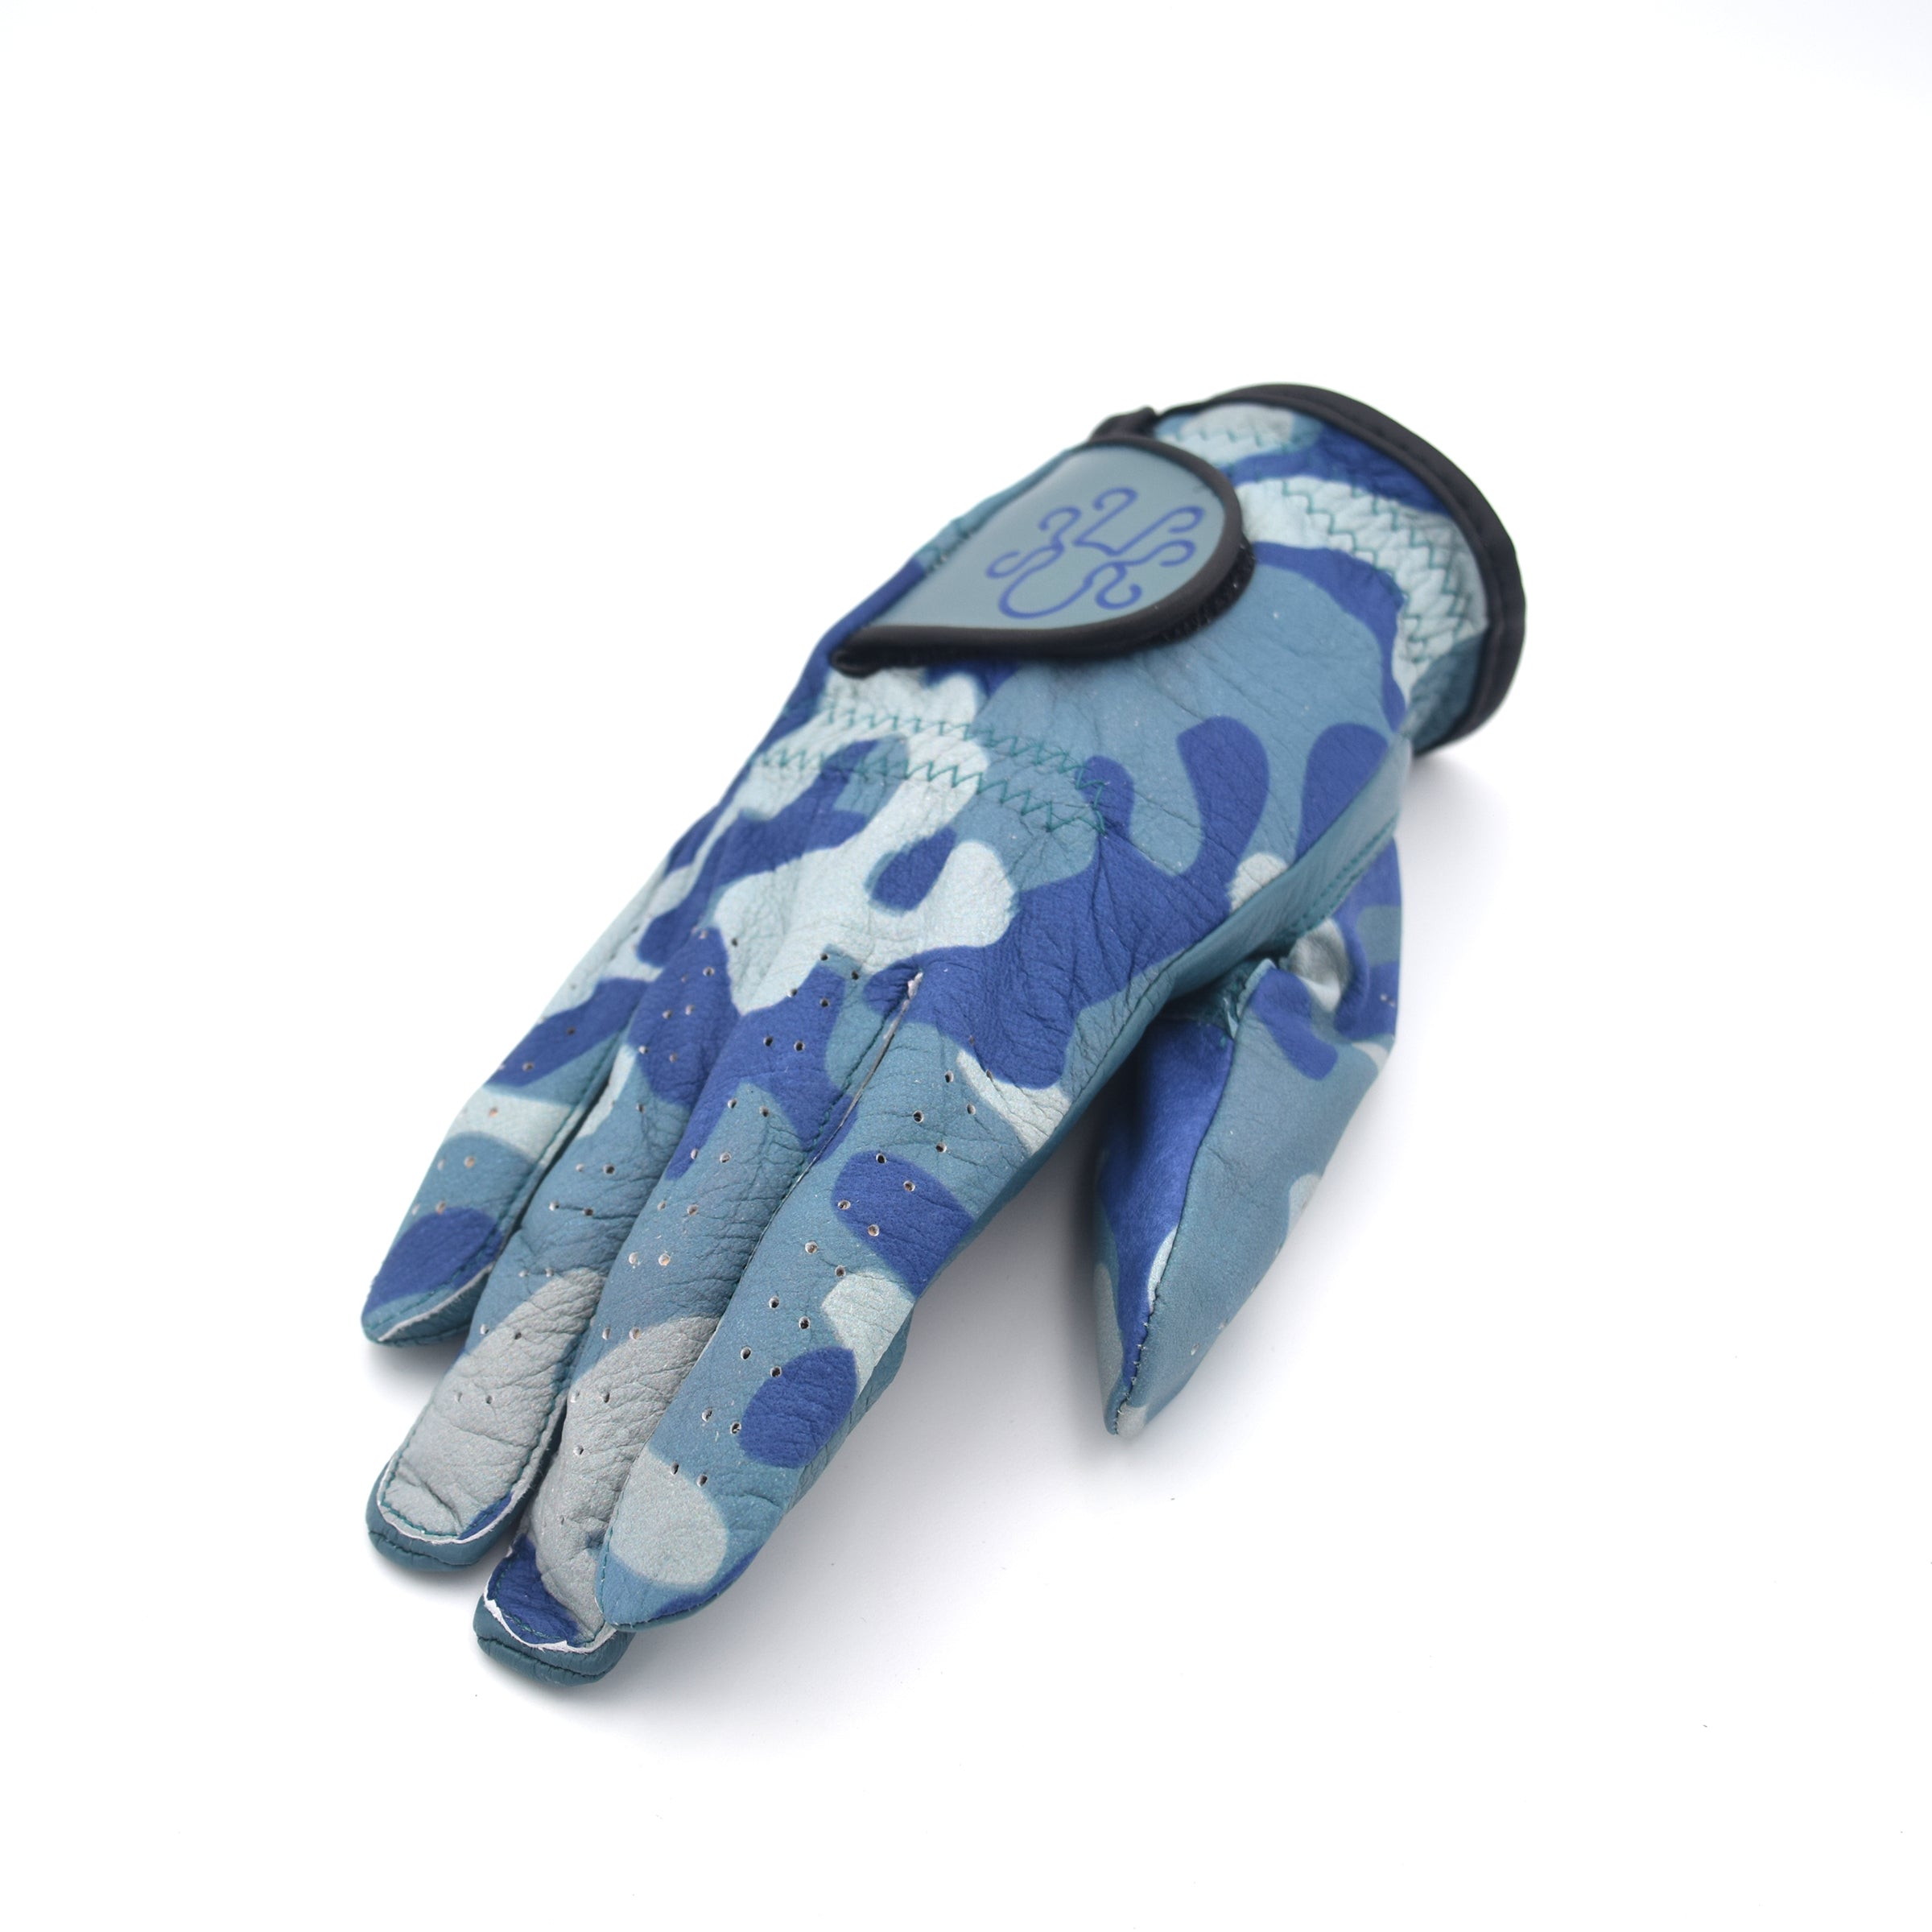 Kraken Golf Glove - Blue Camouflage